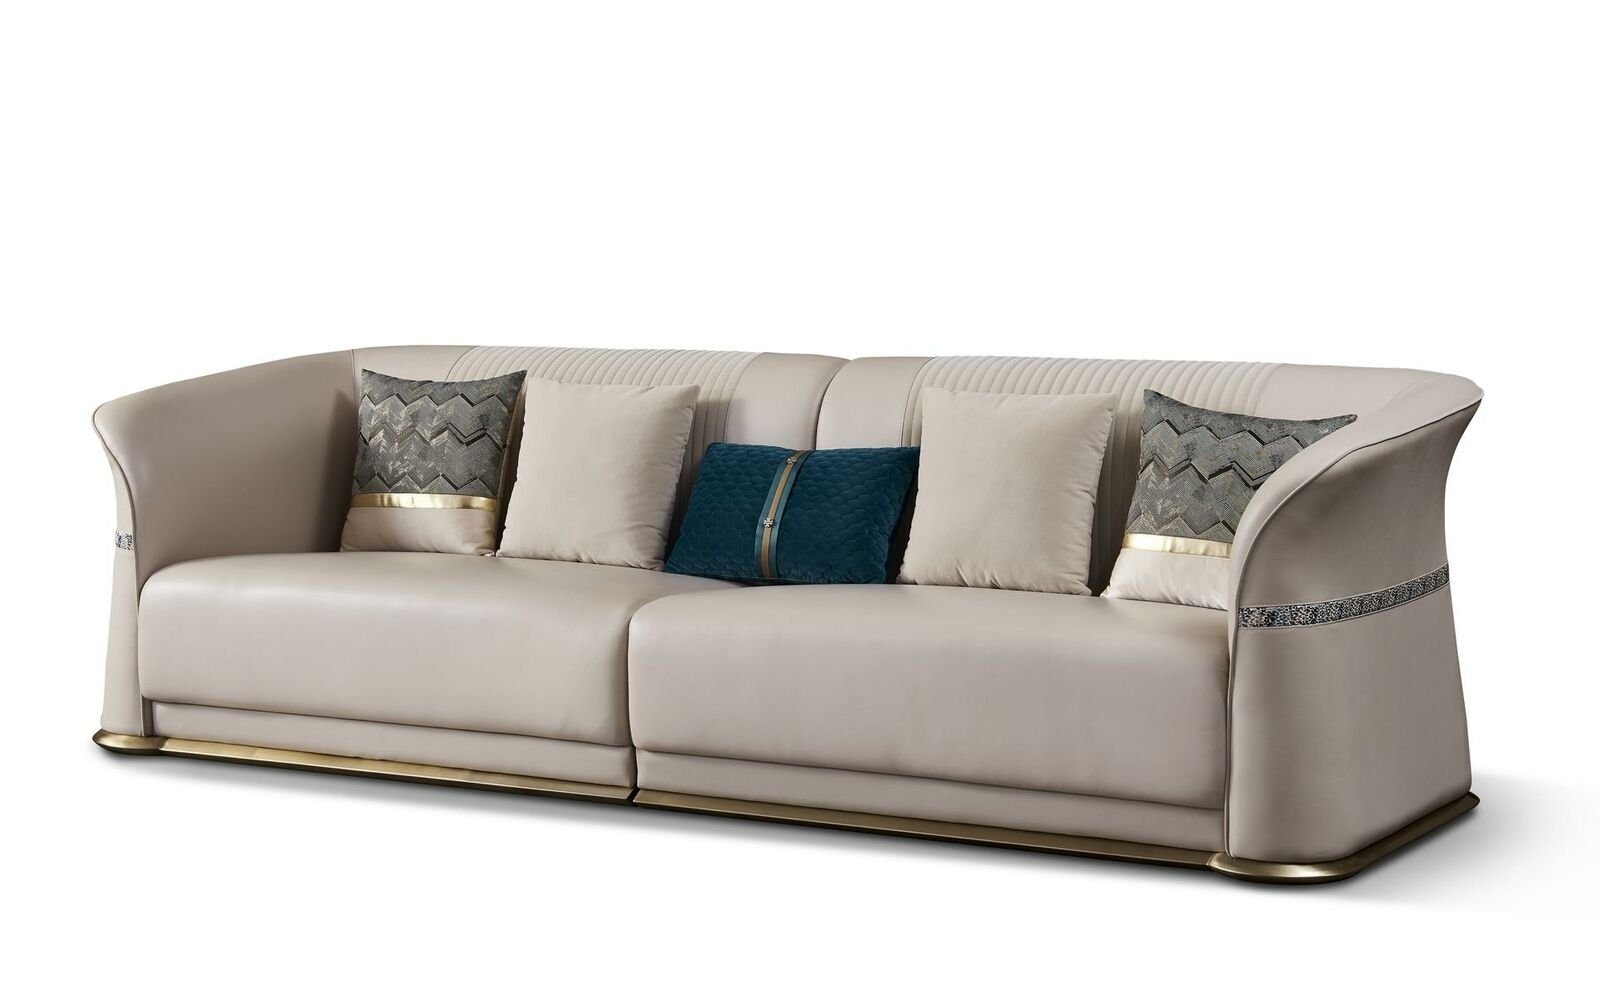 JVmoebel Sofa, Luxus Dreisitzer Couch Sitz Polster 3 Sitz Polster Couch